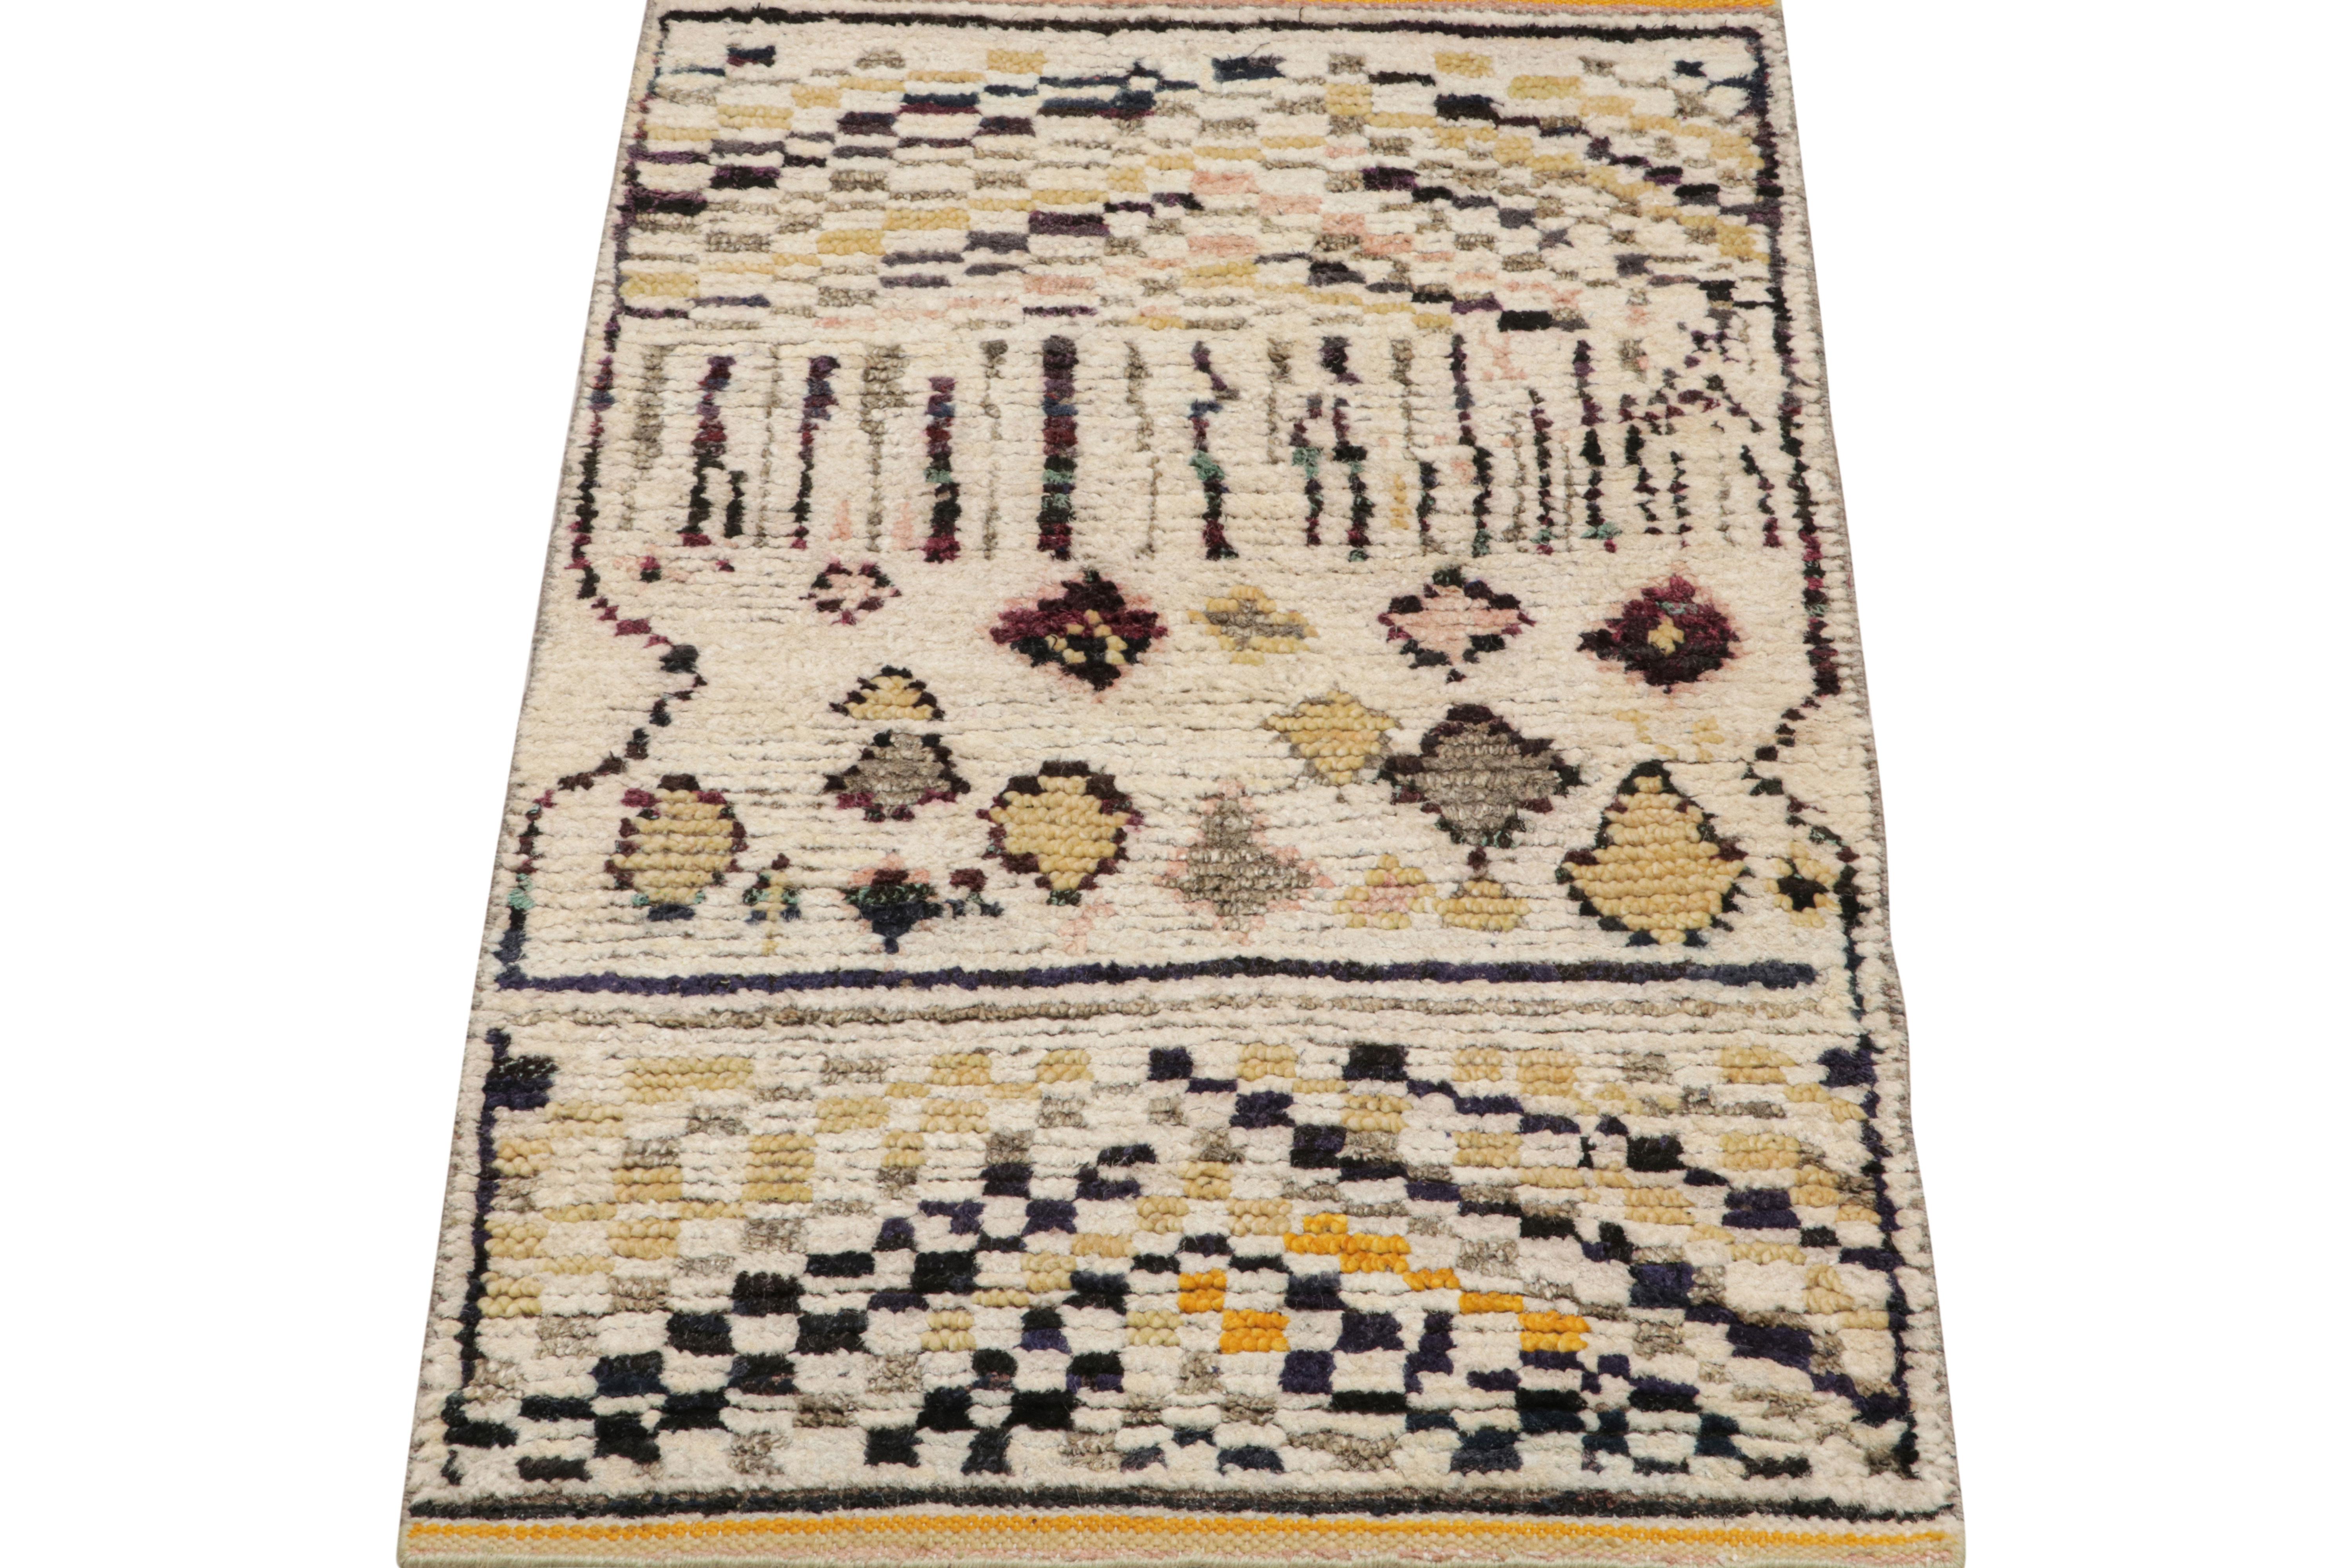 Noué à la main en laine et en soie, ce tapis marocain 2x3 présente une texture nervurée inspirée de pièces de style boucherouite et de textiles similaires dans le style tribal berbère primitiviste.

Sur le Design : 

Les connaisseurs peuvent admirer